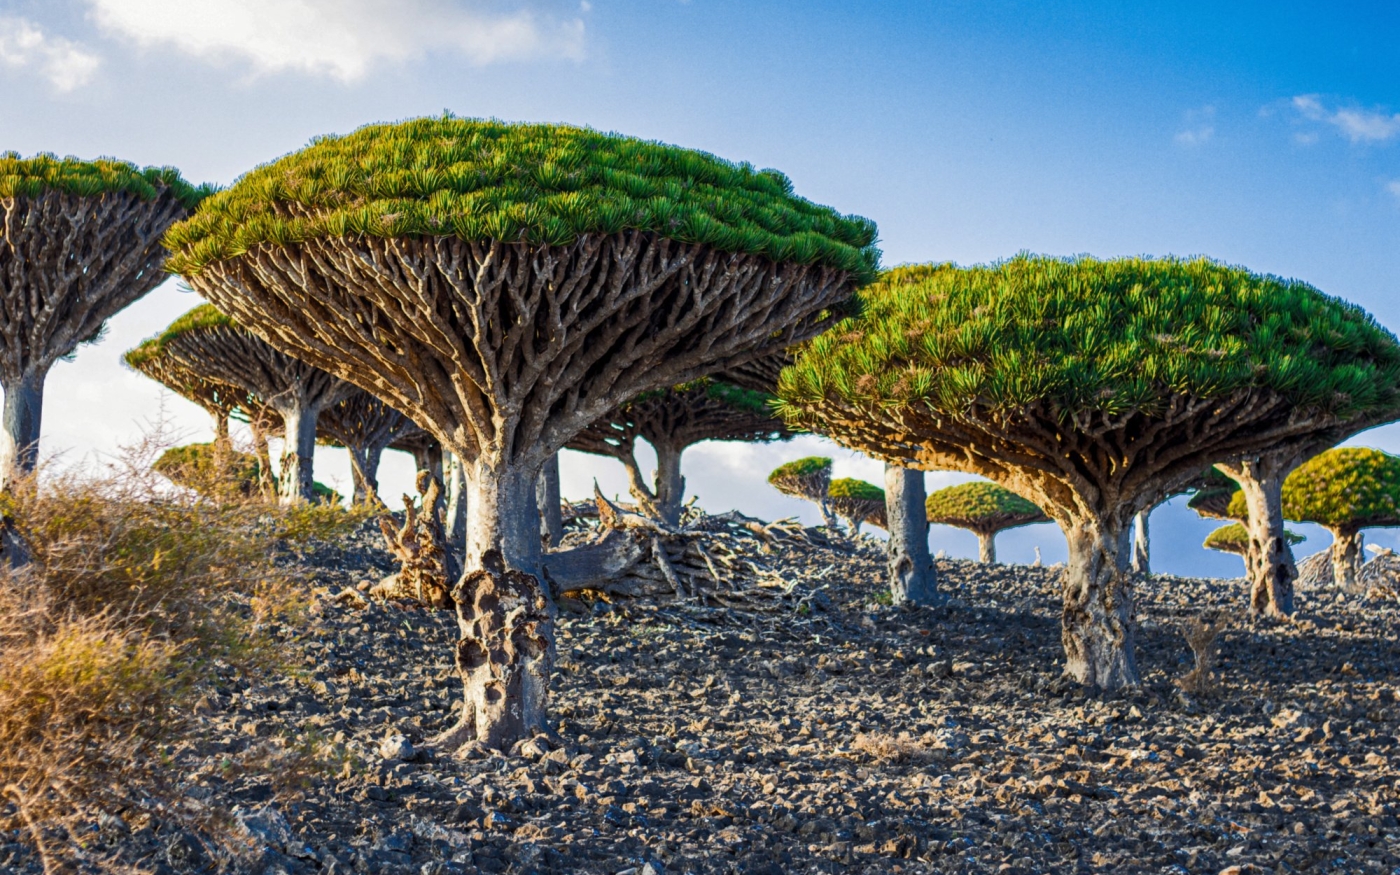 Semblant venir d’un autre monde, le dragonnier de Socotra produit une résine rouge foncé appelée sang-de-dragon (AFP)